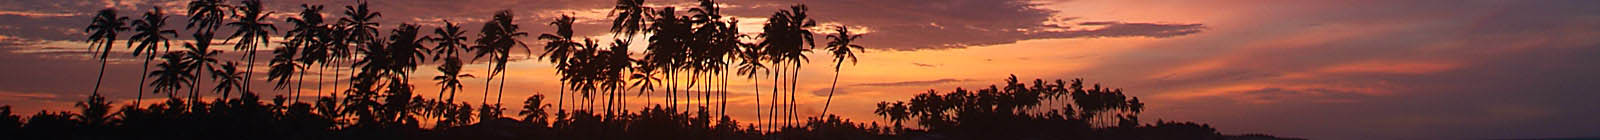 Benin, Grand Popo, red sunset palms, Banner.